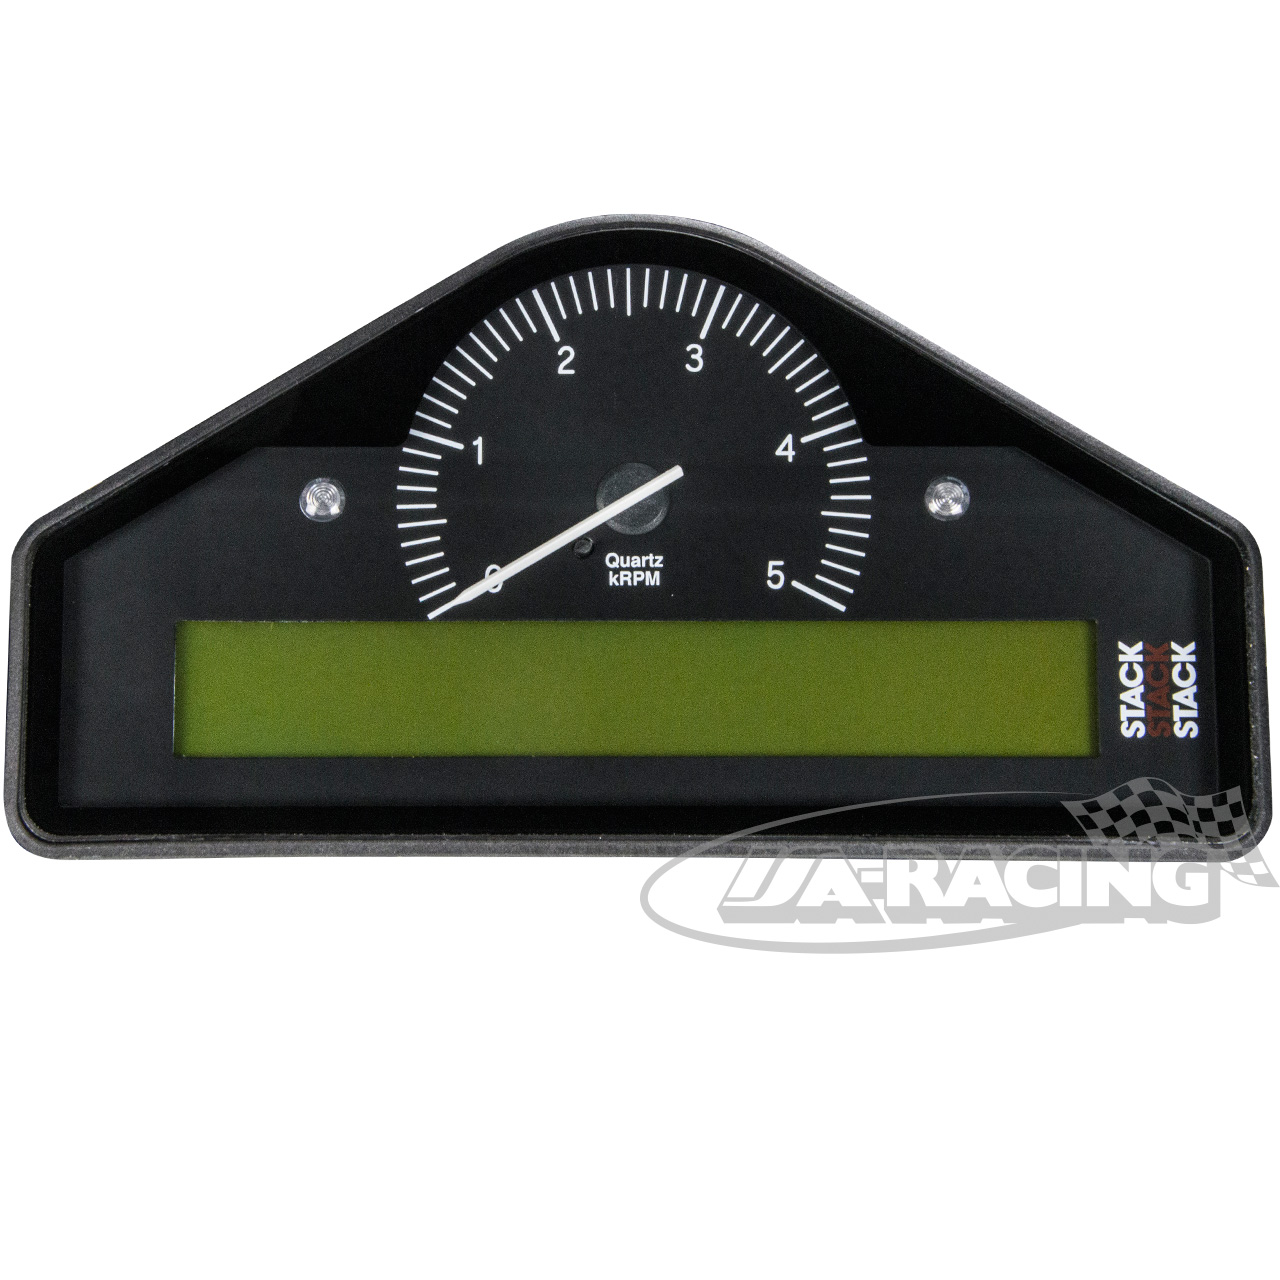 ST3804 GPS Tachometer, STACK Tachometer, Instrumentierung,  Datenaufzeichnung, Video, TPMS, Elektrik/Elektronik